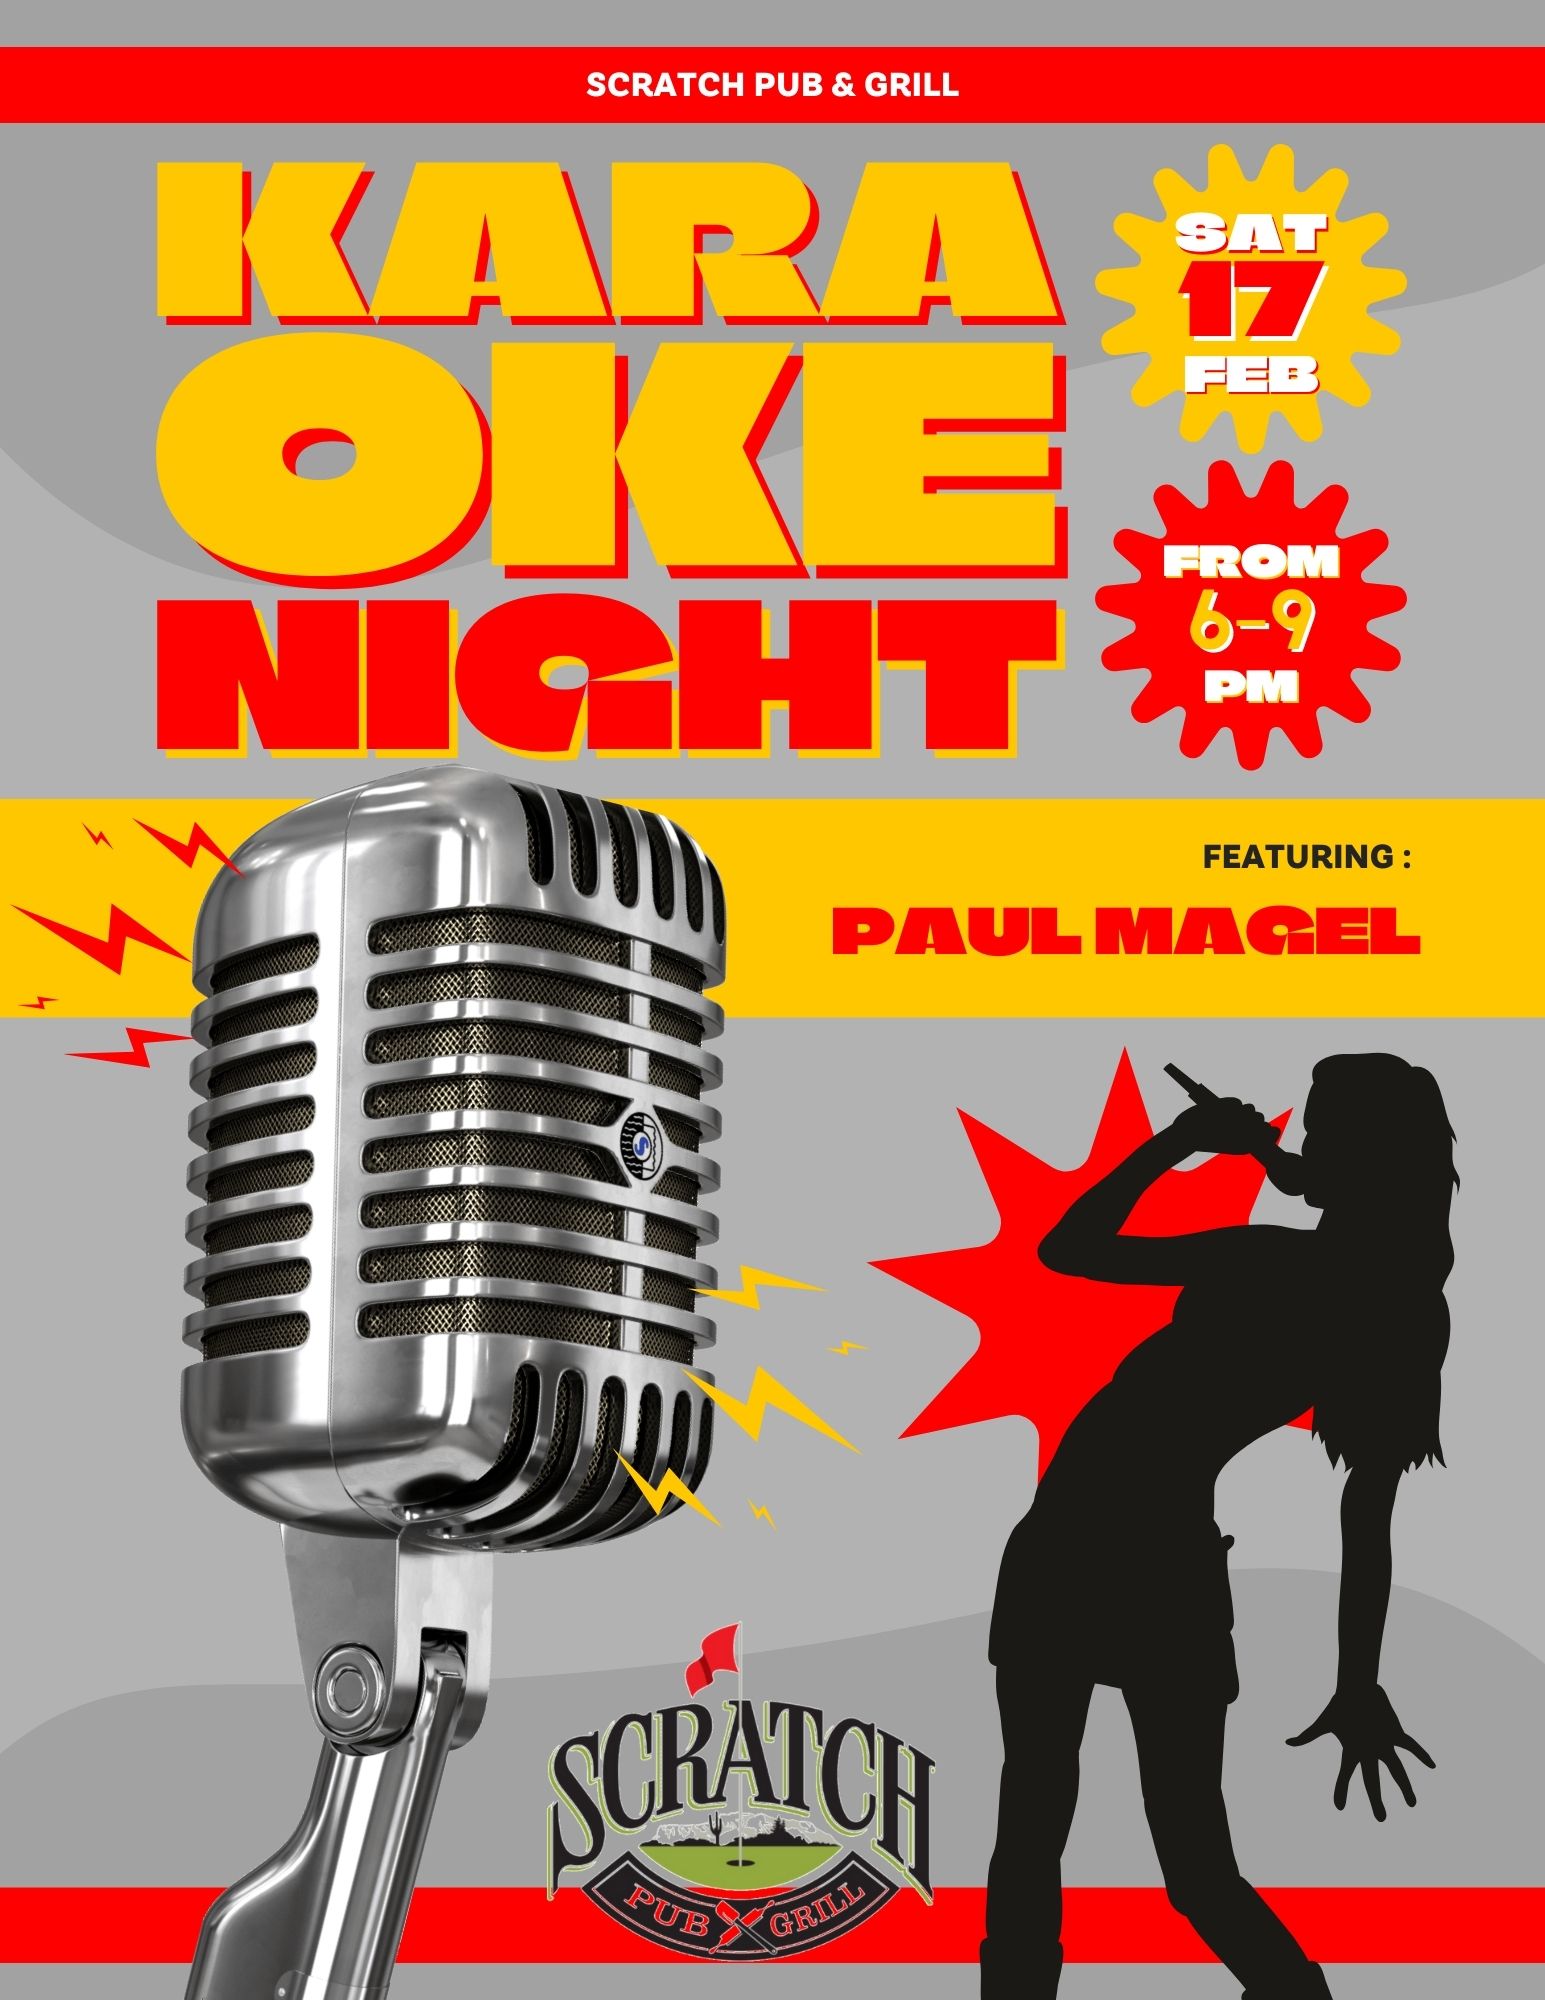 karaoke Night in Mesa, Arizona 